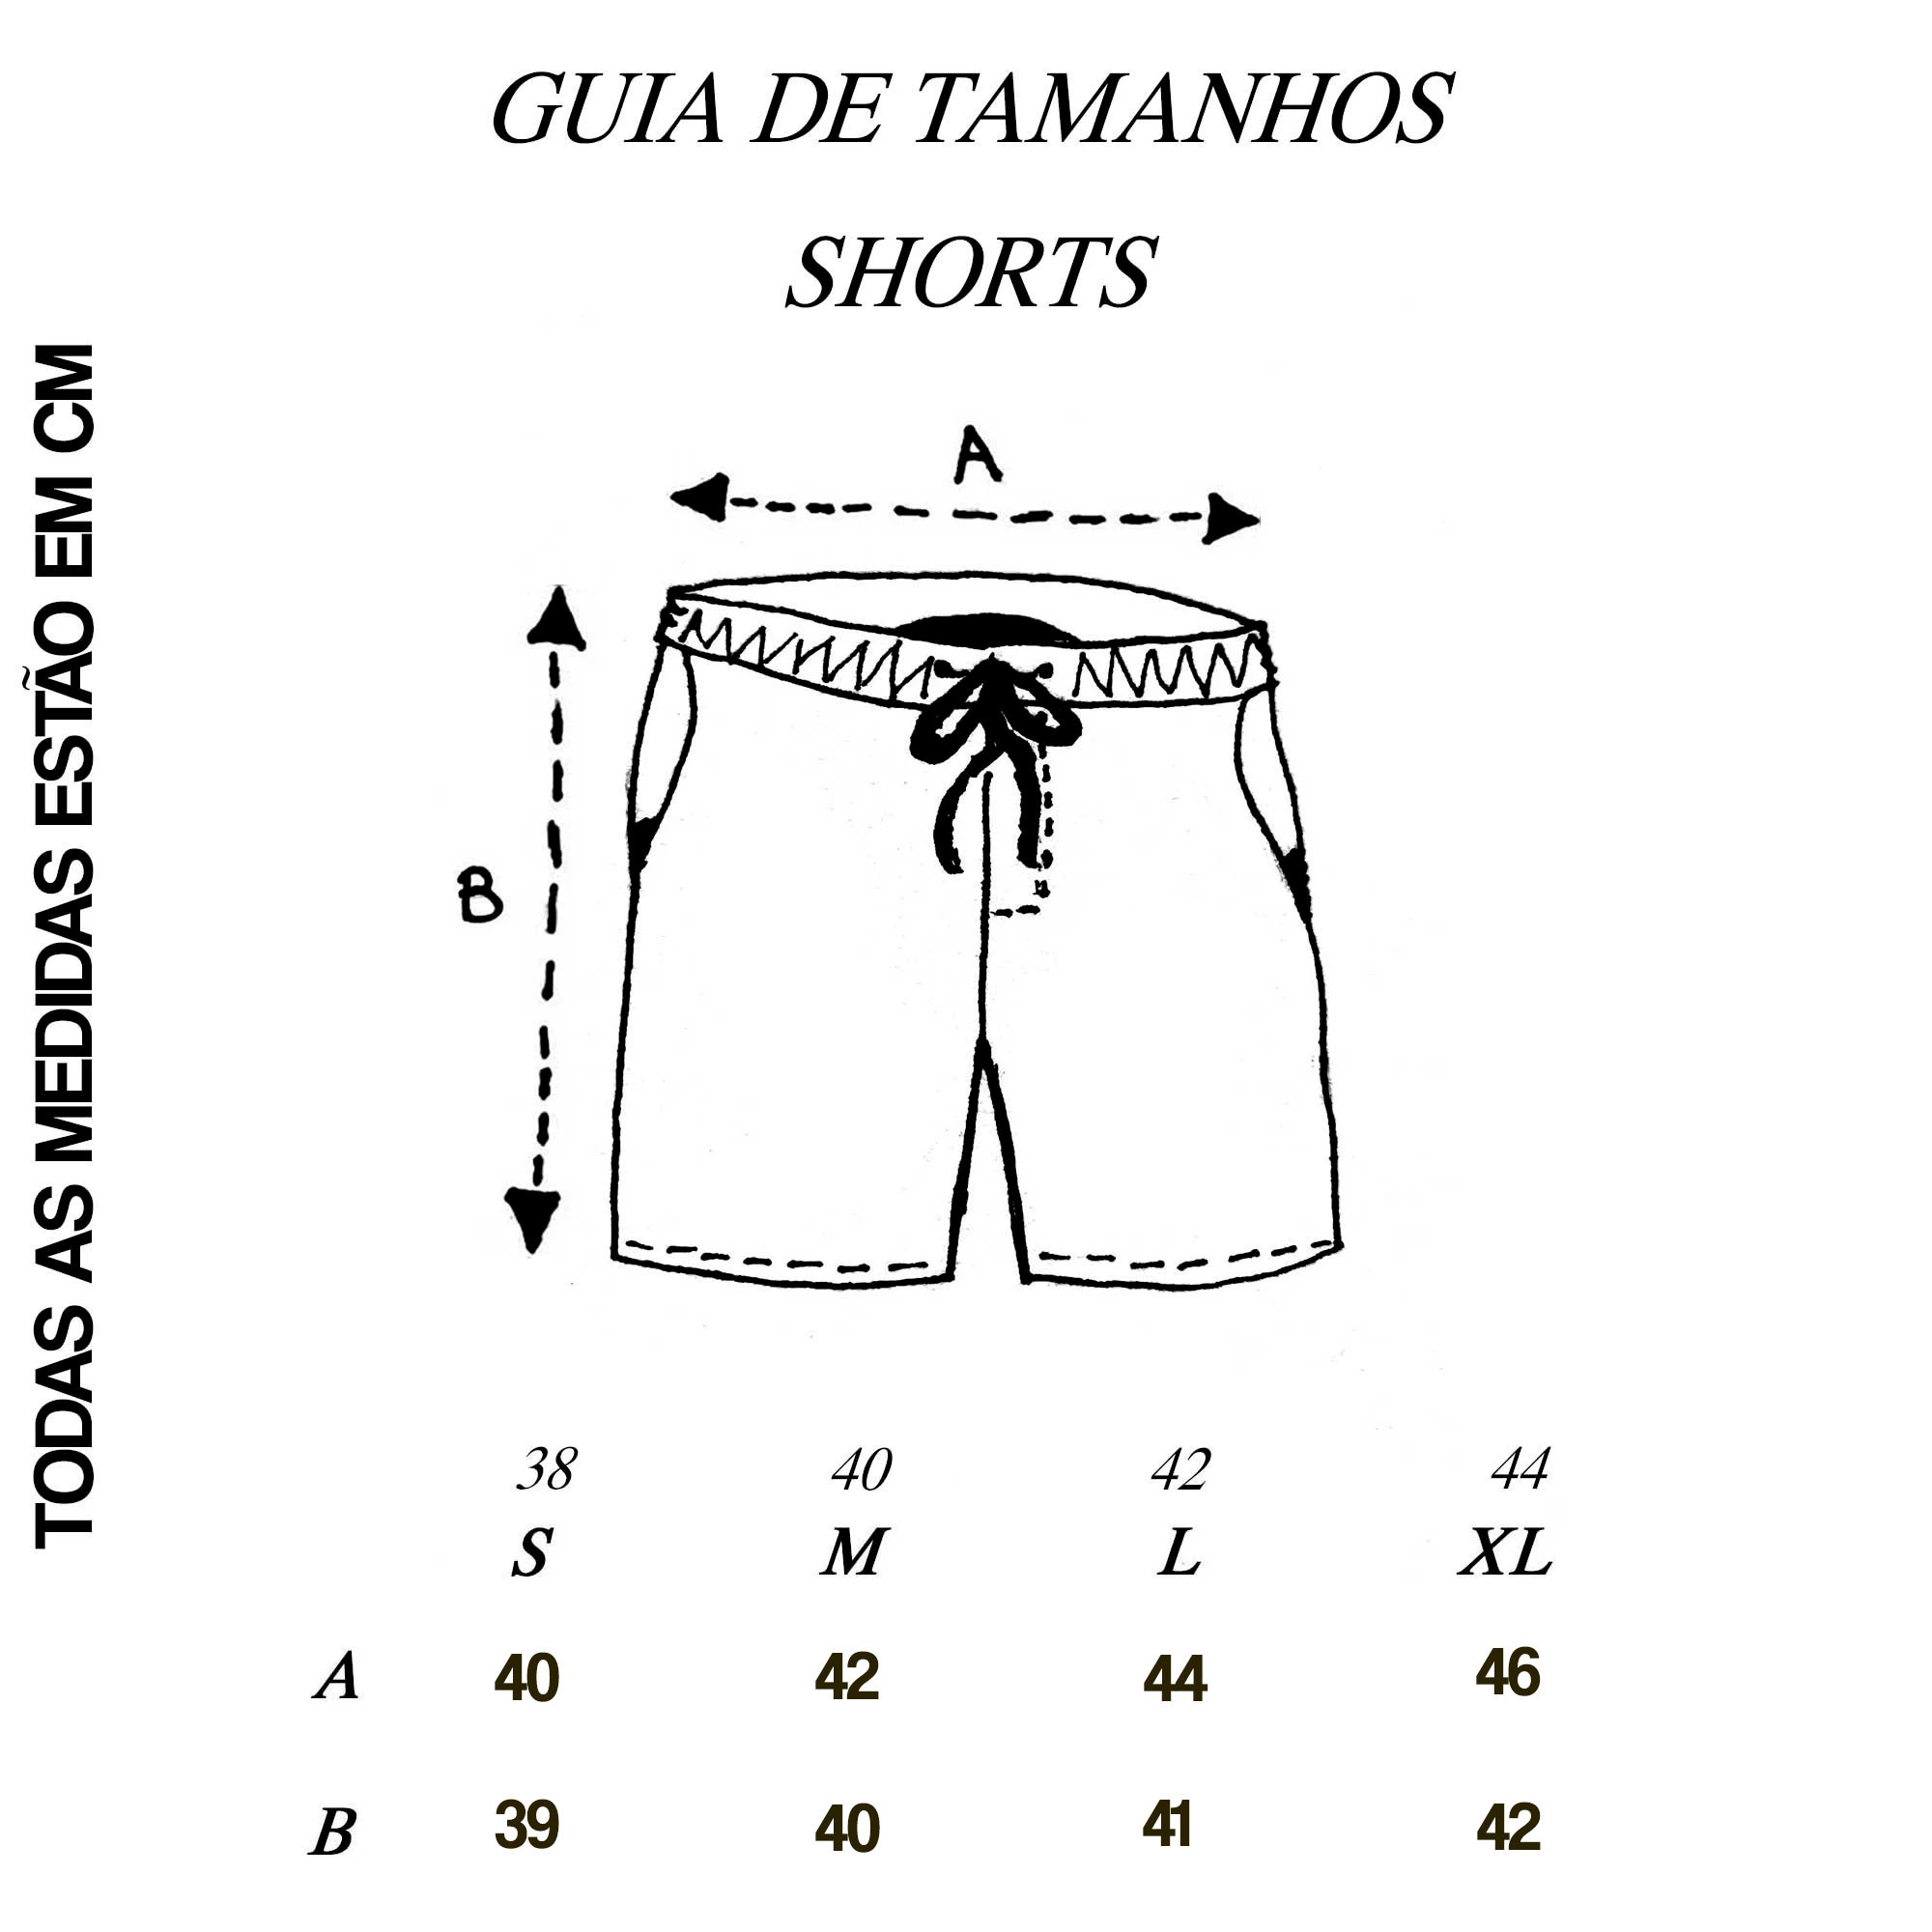 Shorts Guia de Tamanhos